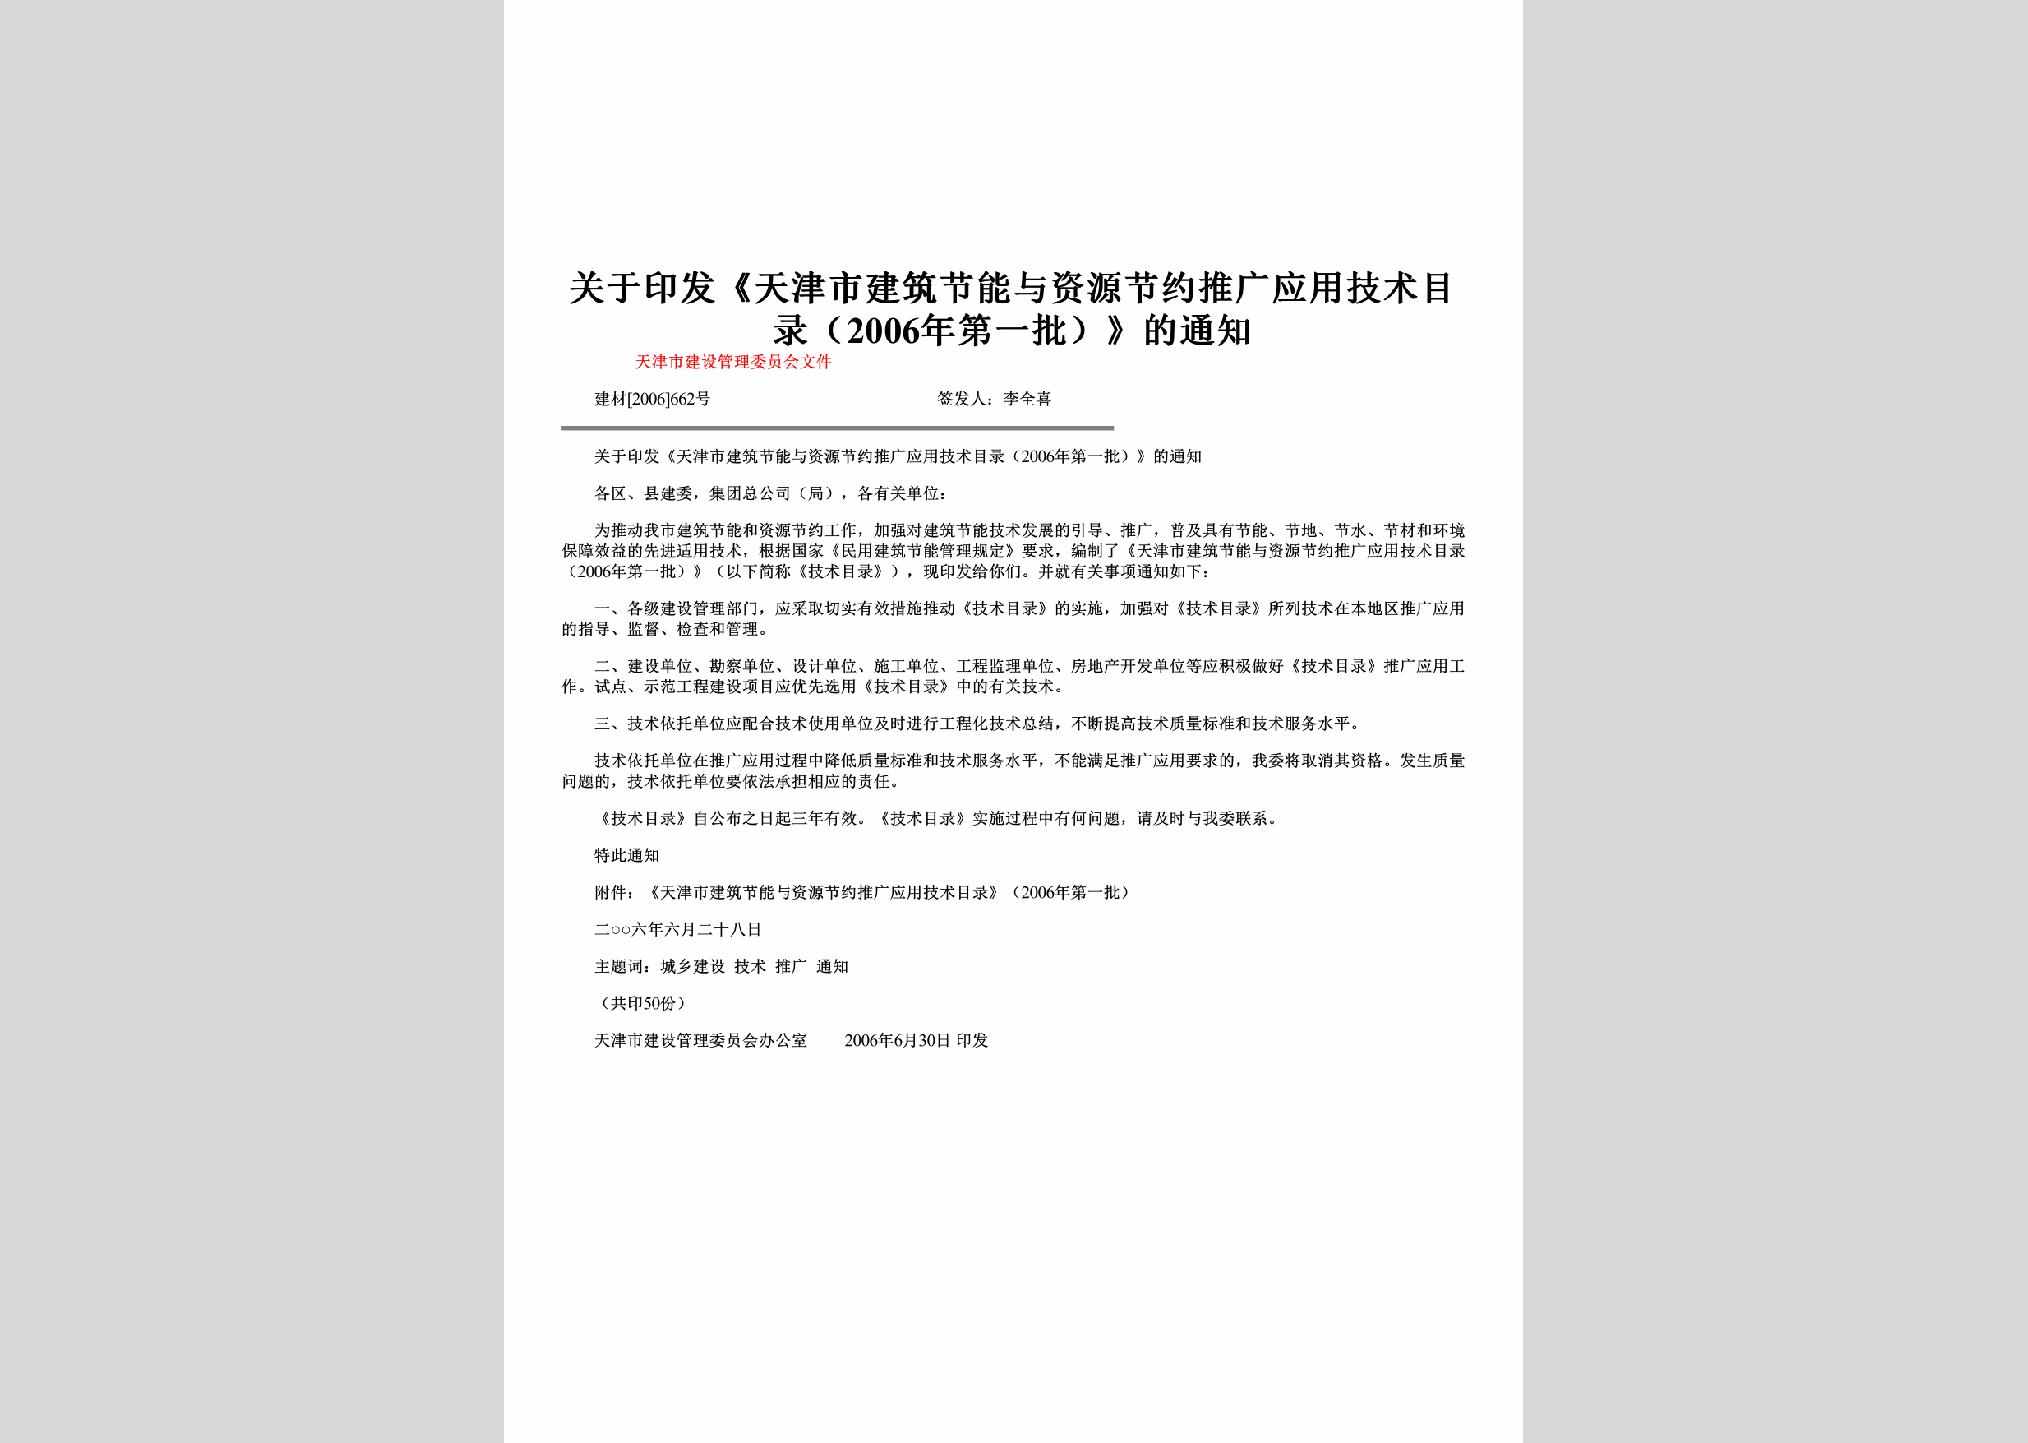 建材[2006]662号：关于印发《天津市建筑节能与资源节约推广应用技术目录（2006年第一批）》的通知